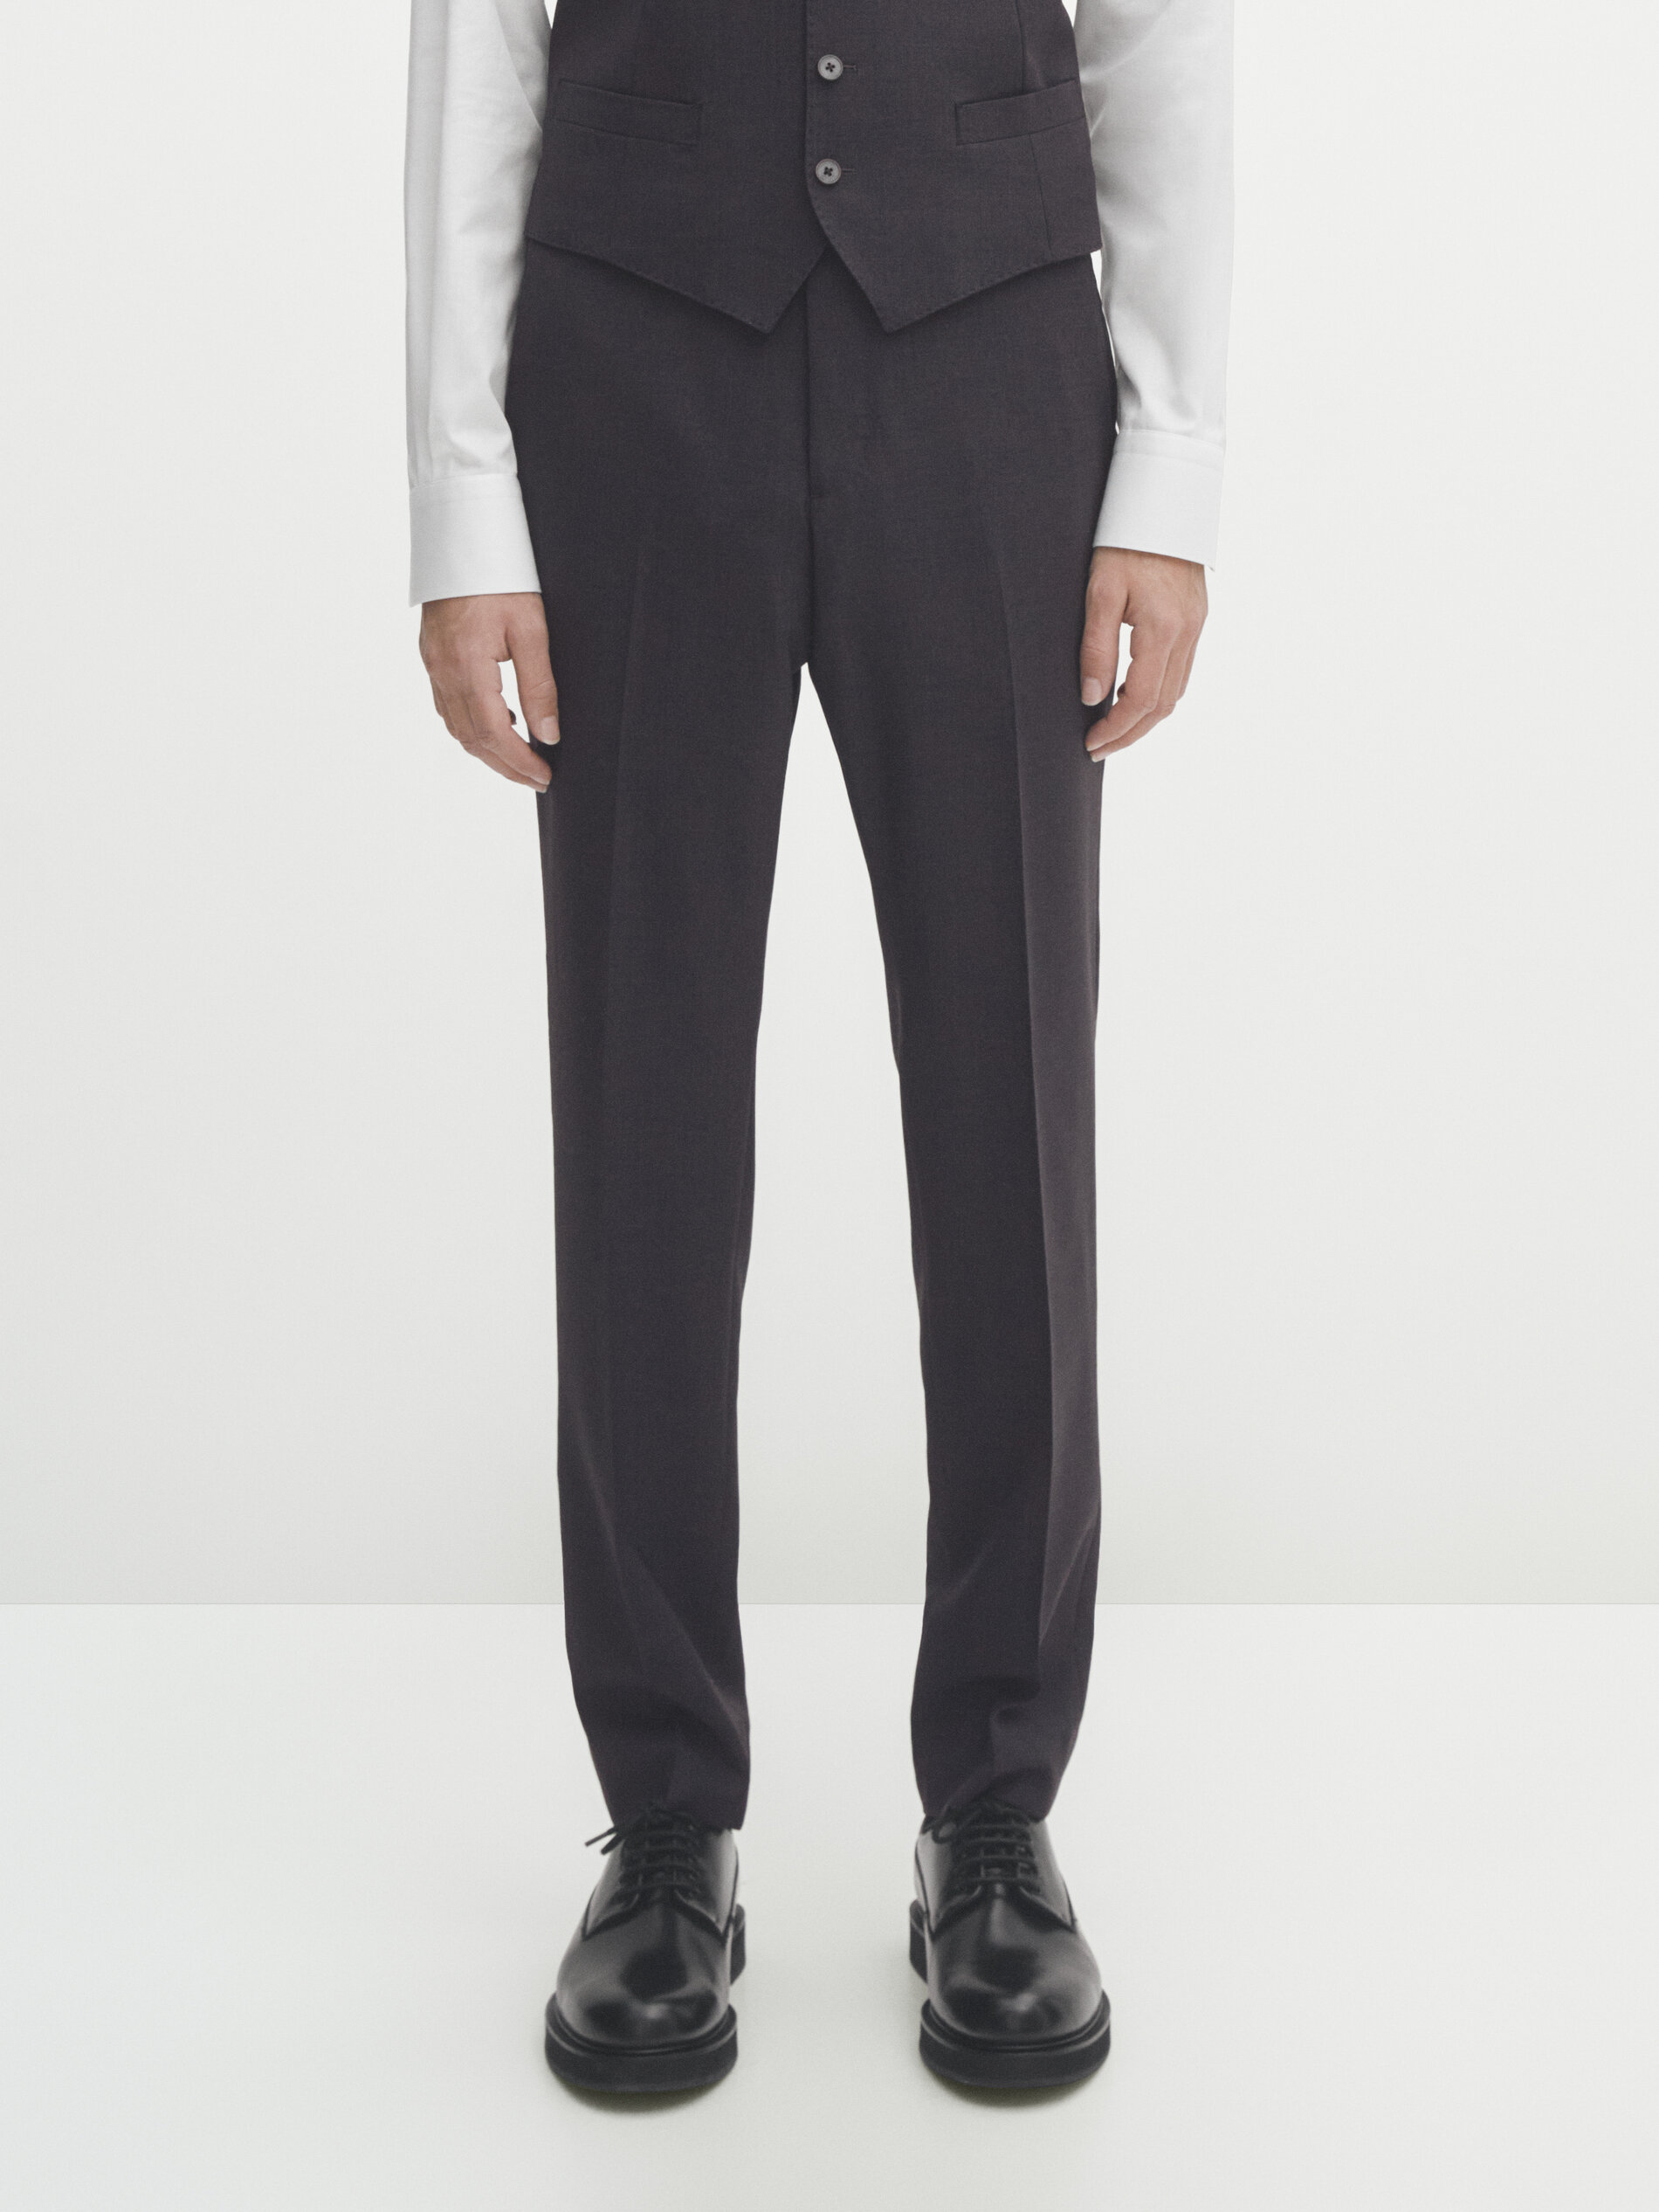 Men's Suit Pants - Reiss USA